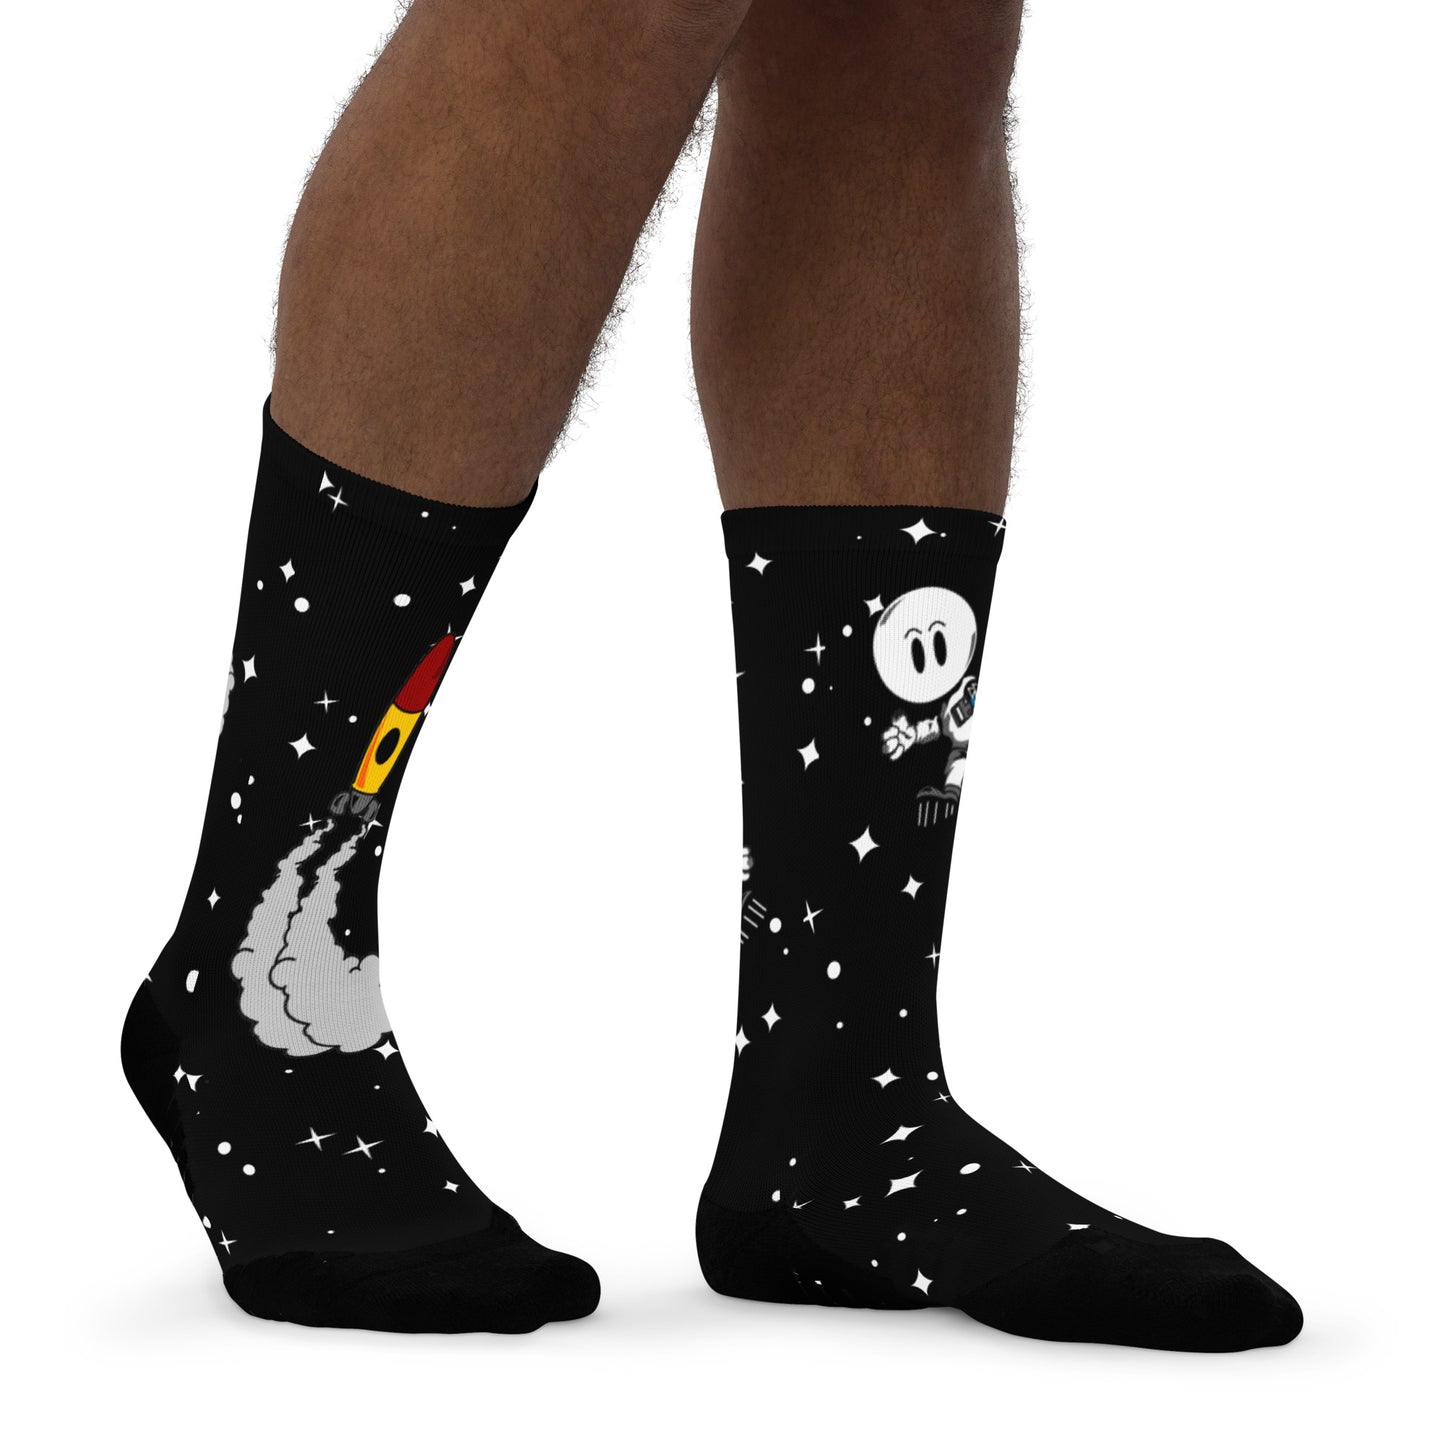 Space Cadet Basketball socks